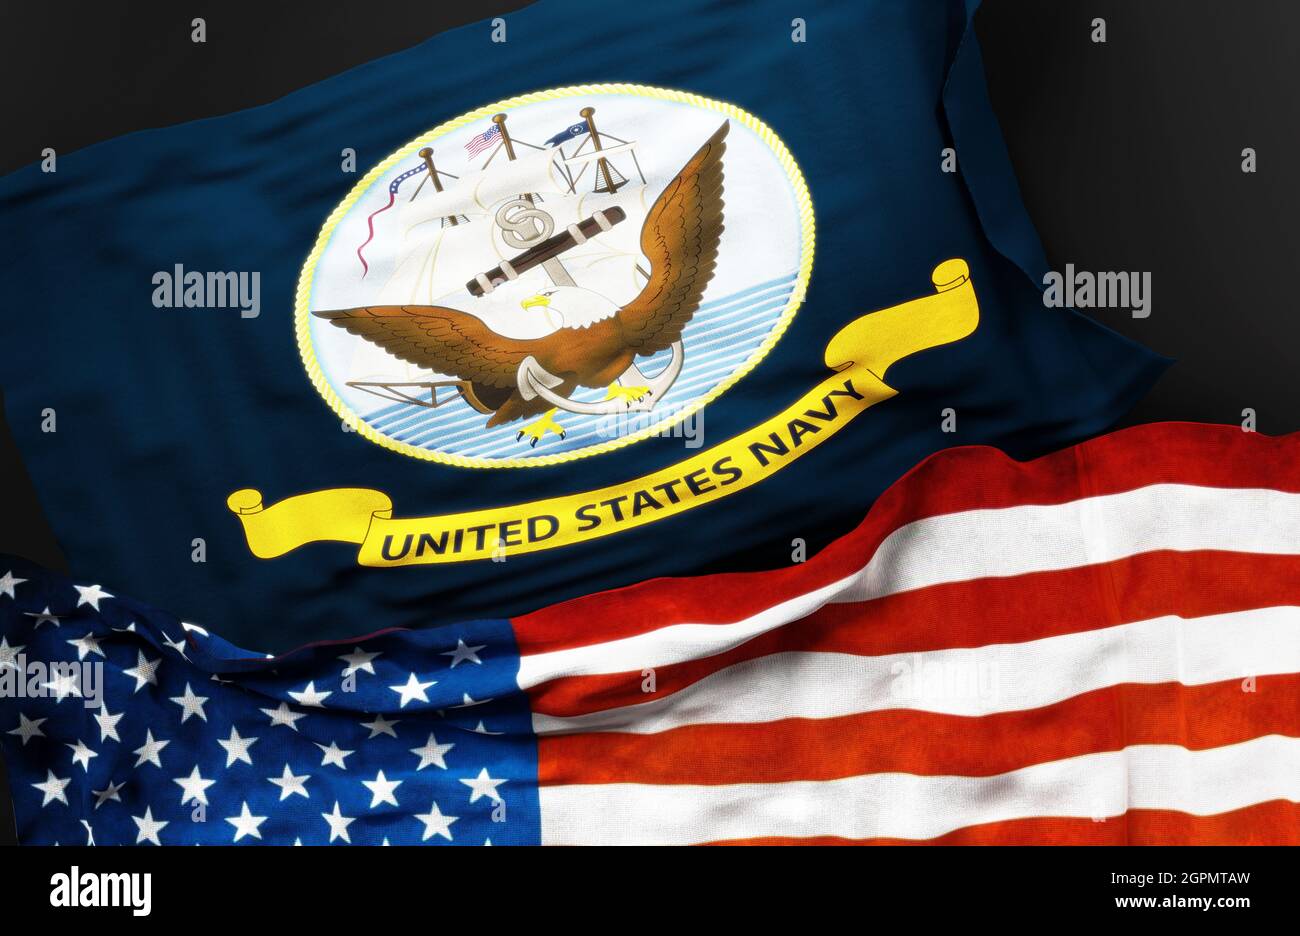 Drapeau de la marine des Etats-Unis avec un drapeau des Etats-Unis d'Amérique comme symbole d'un lien entre eux, illustration 3d Banque D'Images